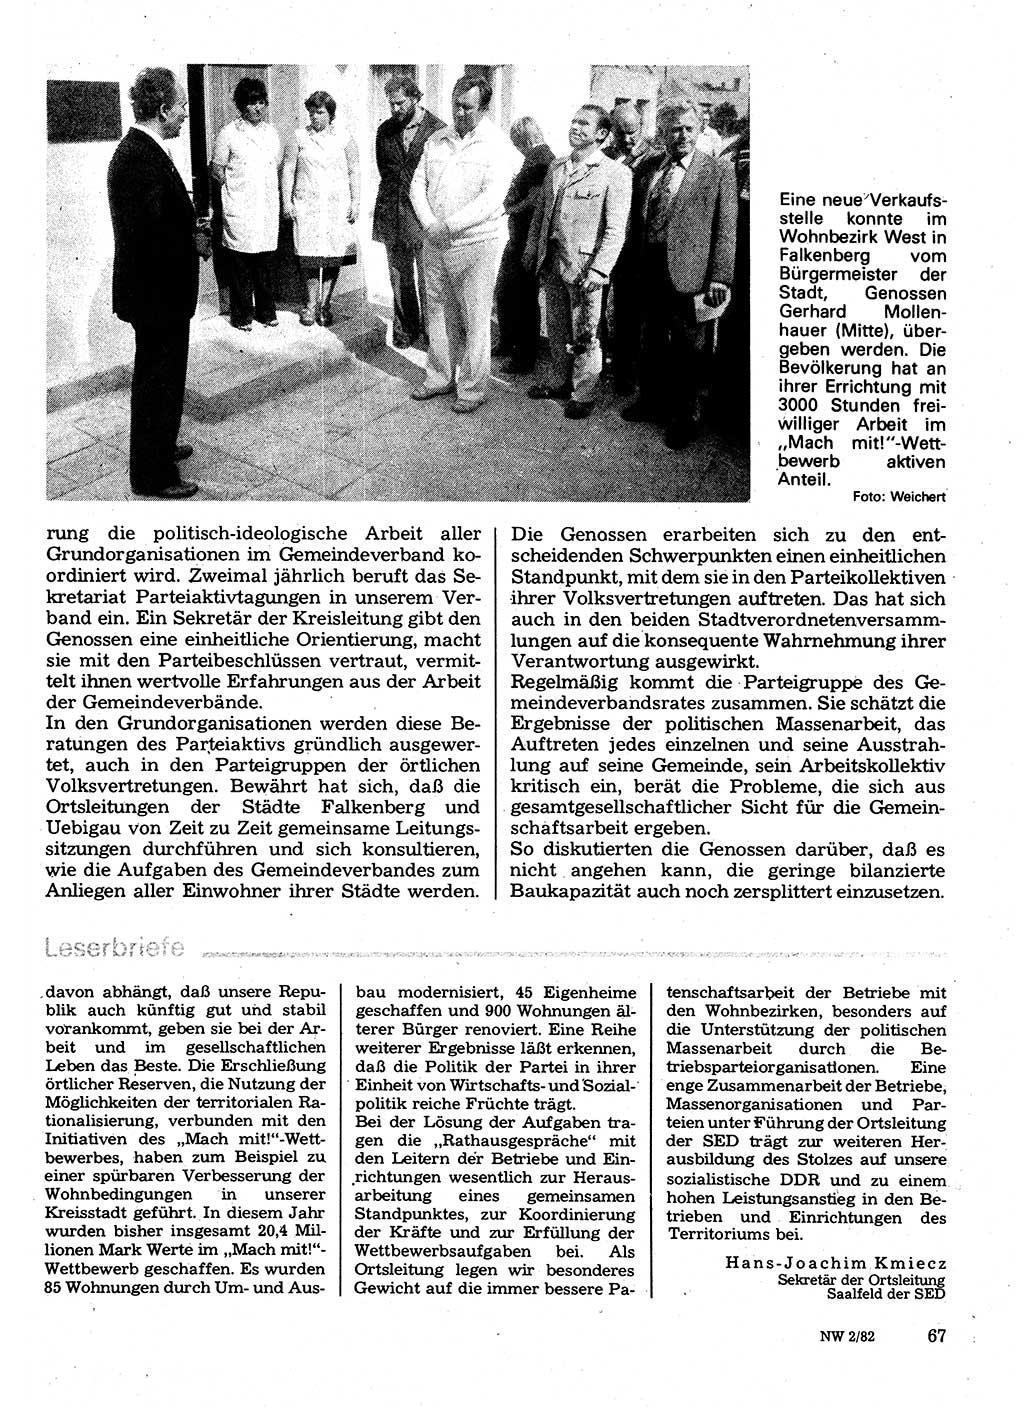 Neuer Weg (NW), Organ des Zentralkomitees (ZK) der SED (Sozialistische Einheitspartei Deutschlands) für Fragen des Parteilebens, 37. Jahrgang [Deutsche Demokratische Republik (DDR)] 1982, Seite 67 (NW ZK SED DDR 1982, S. 67)